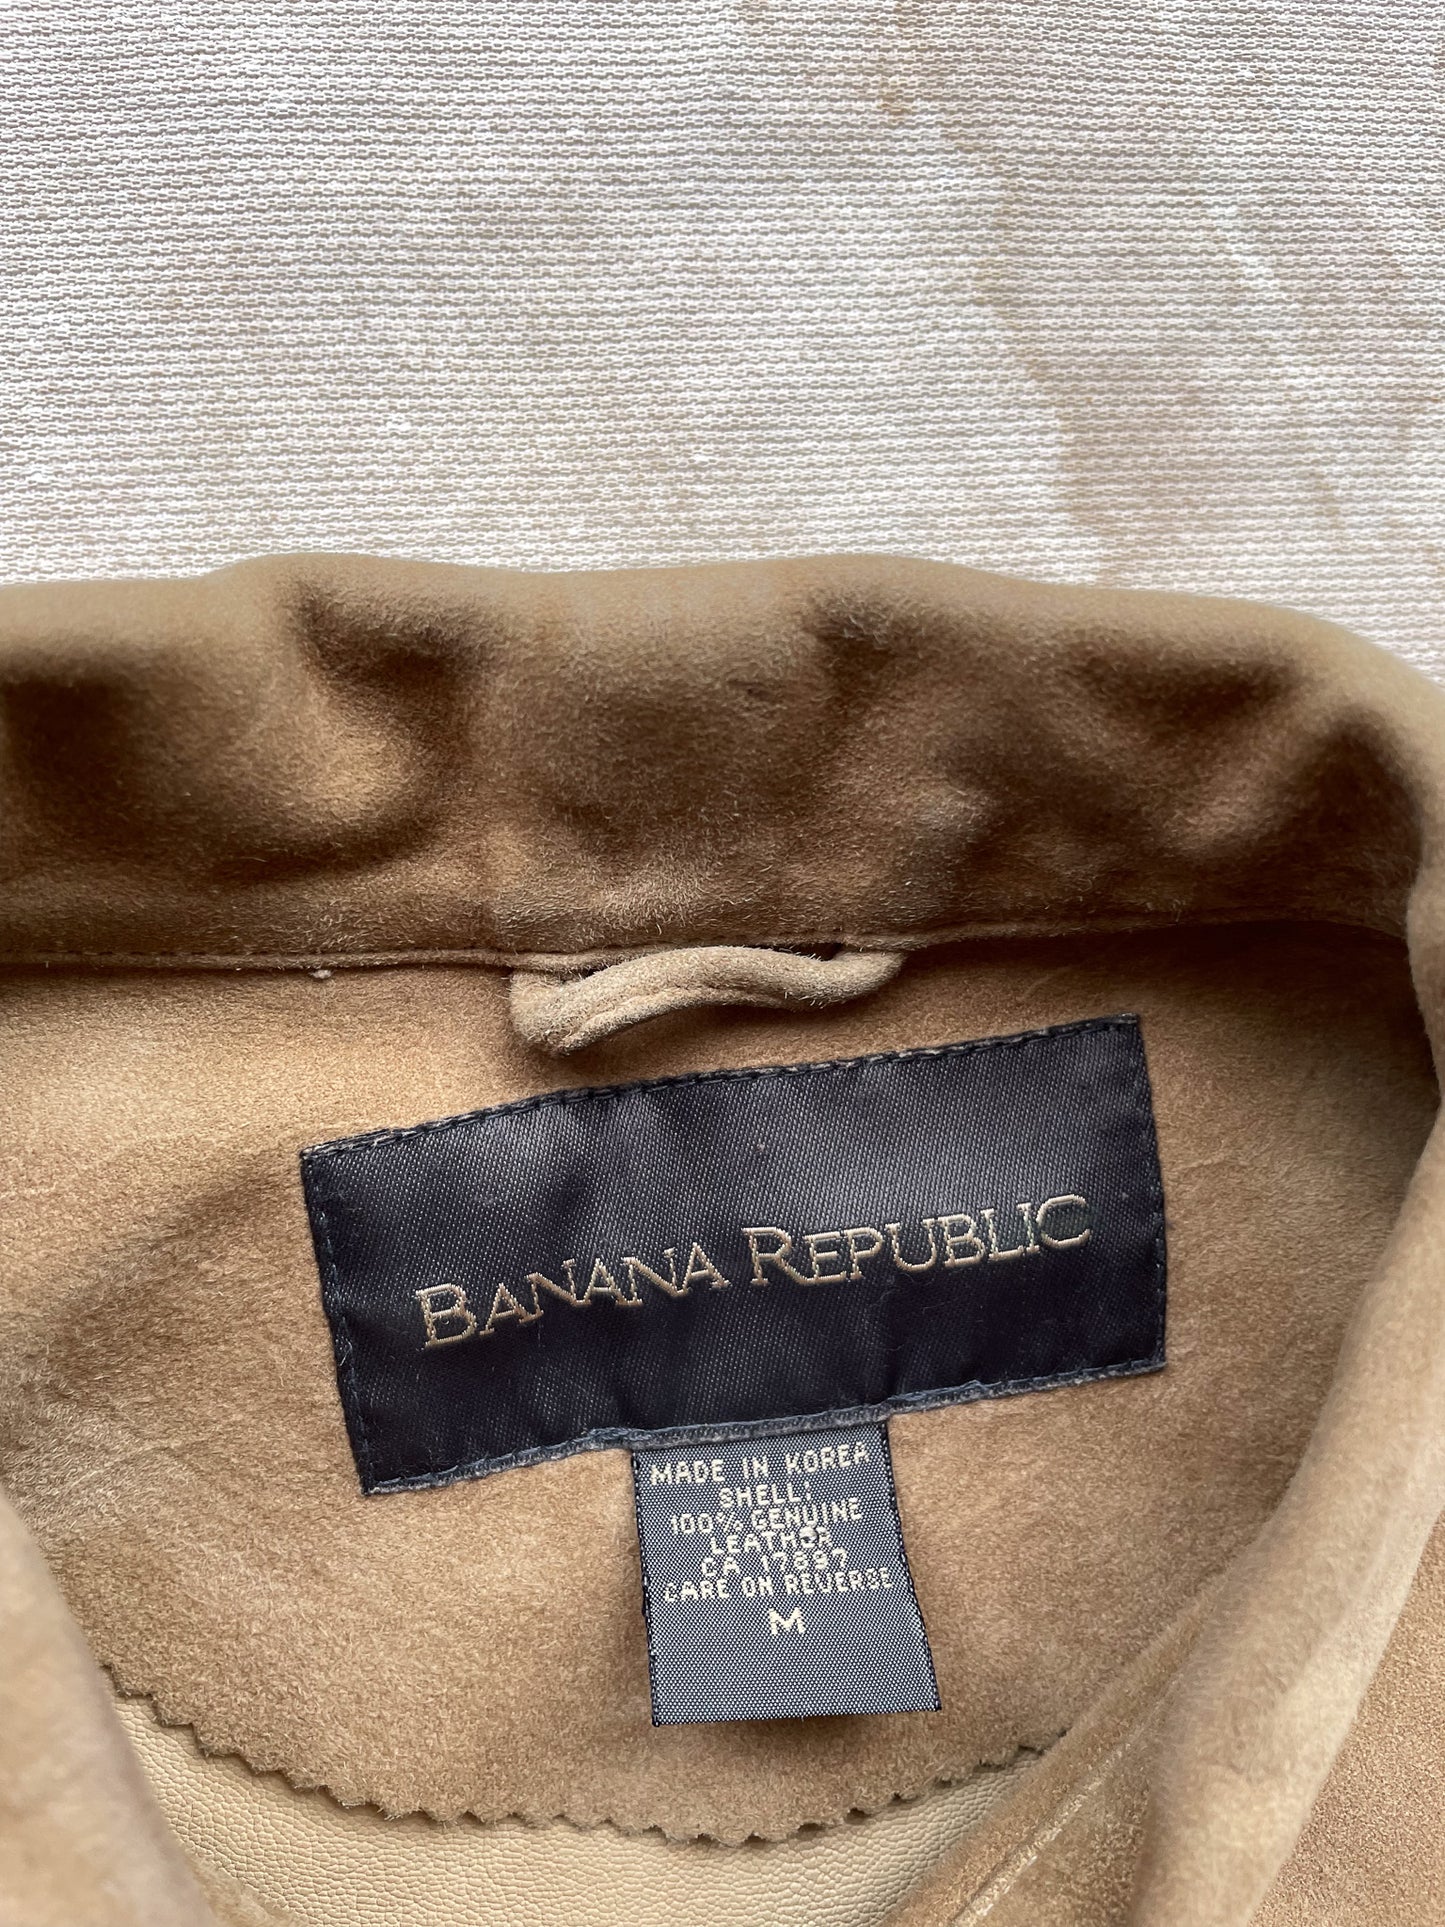 Banana Republic Suede Jacket—[M]